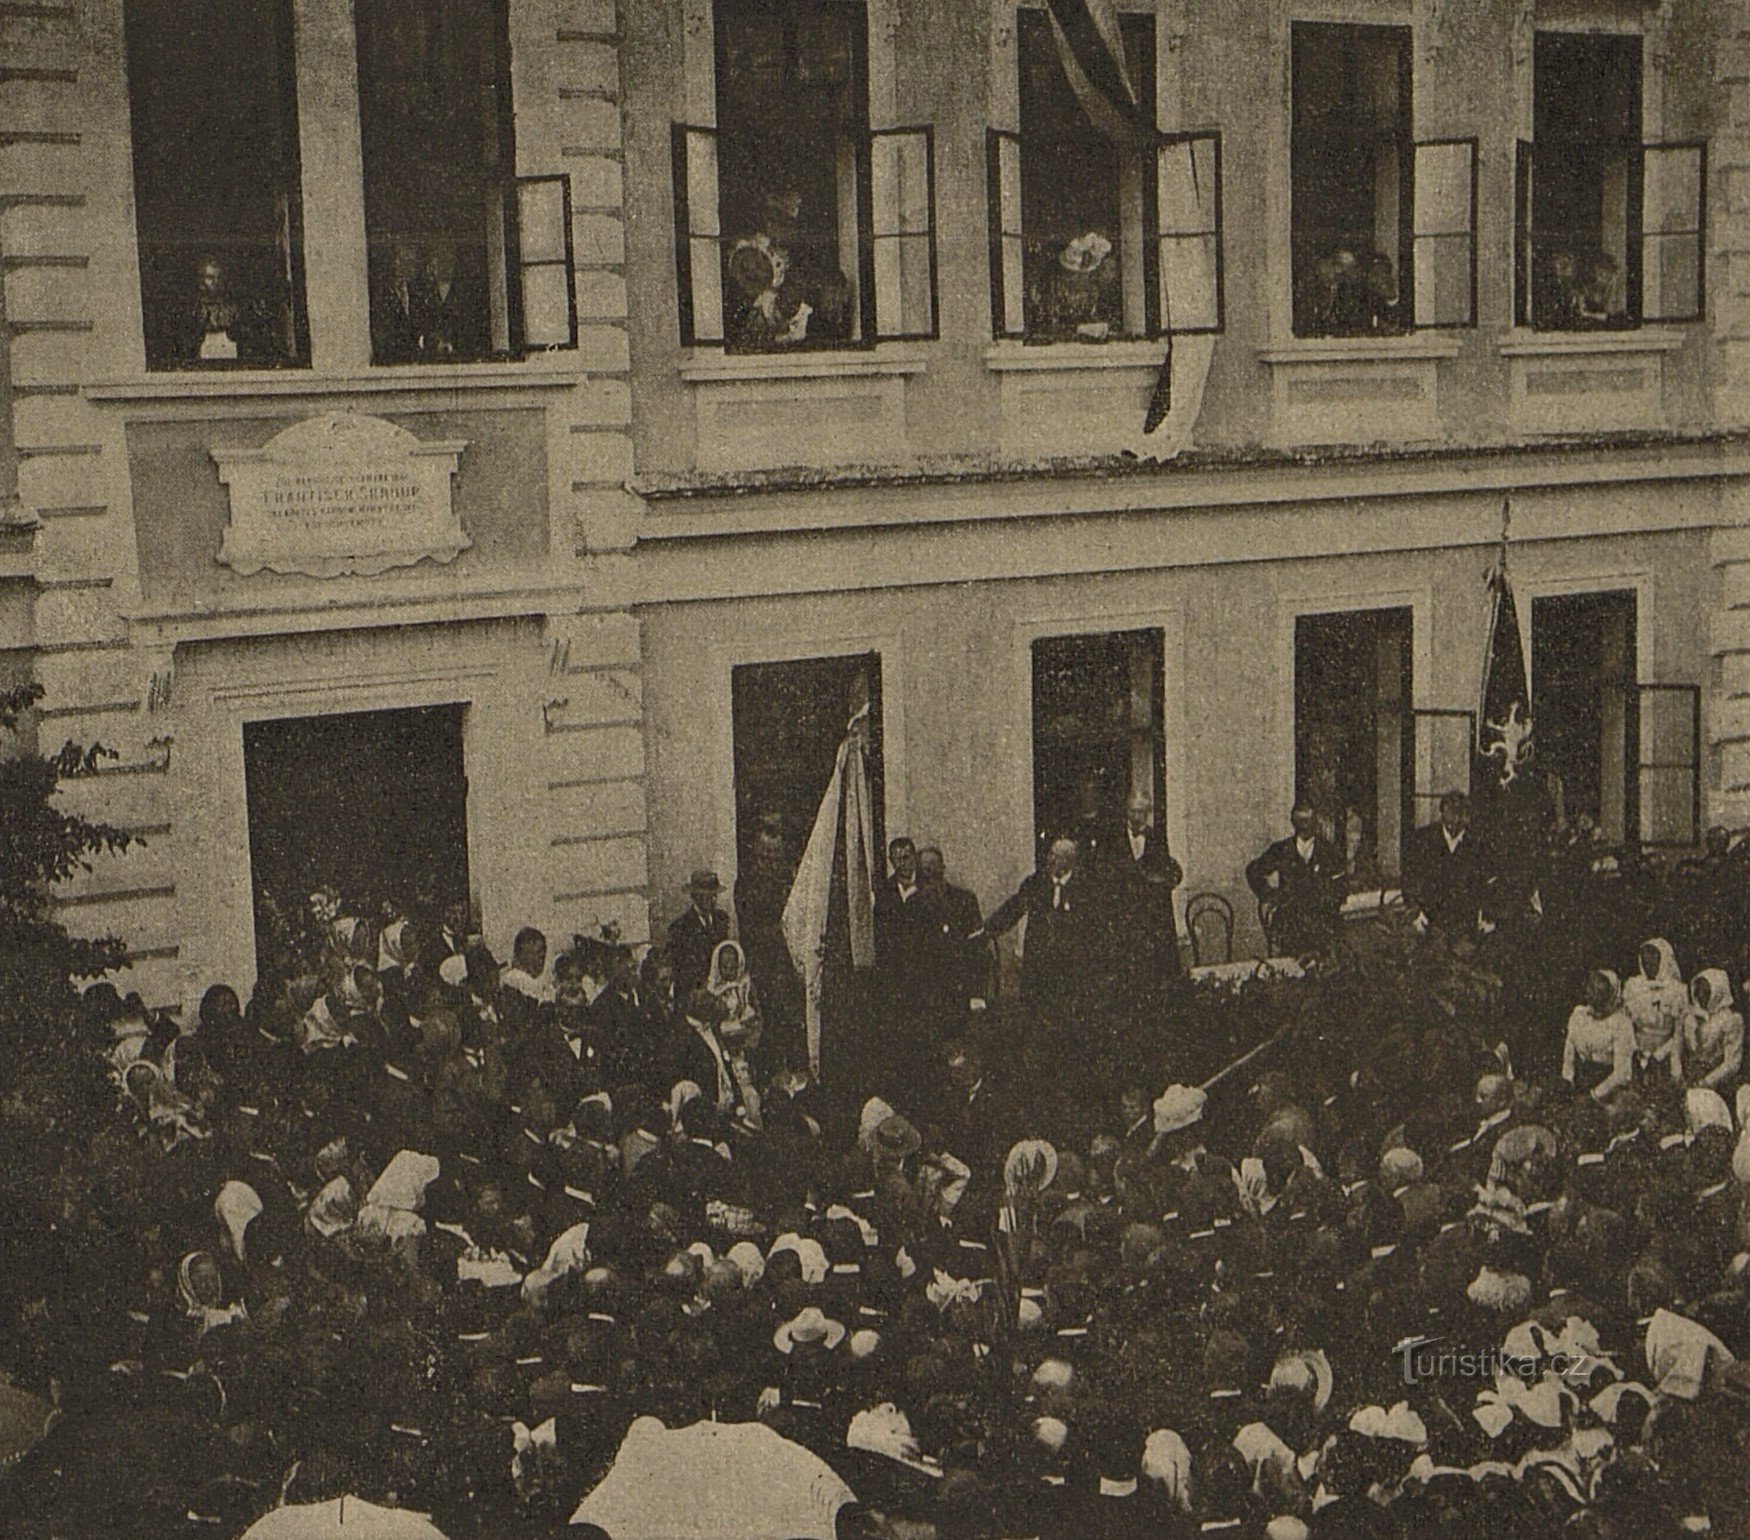 Feierliche Enthüllung der Gedenktafel für František Škroup in Osice im Jahre 1901